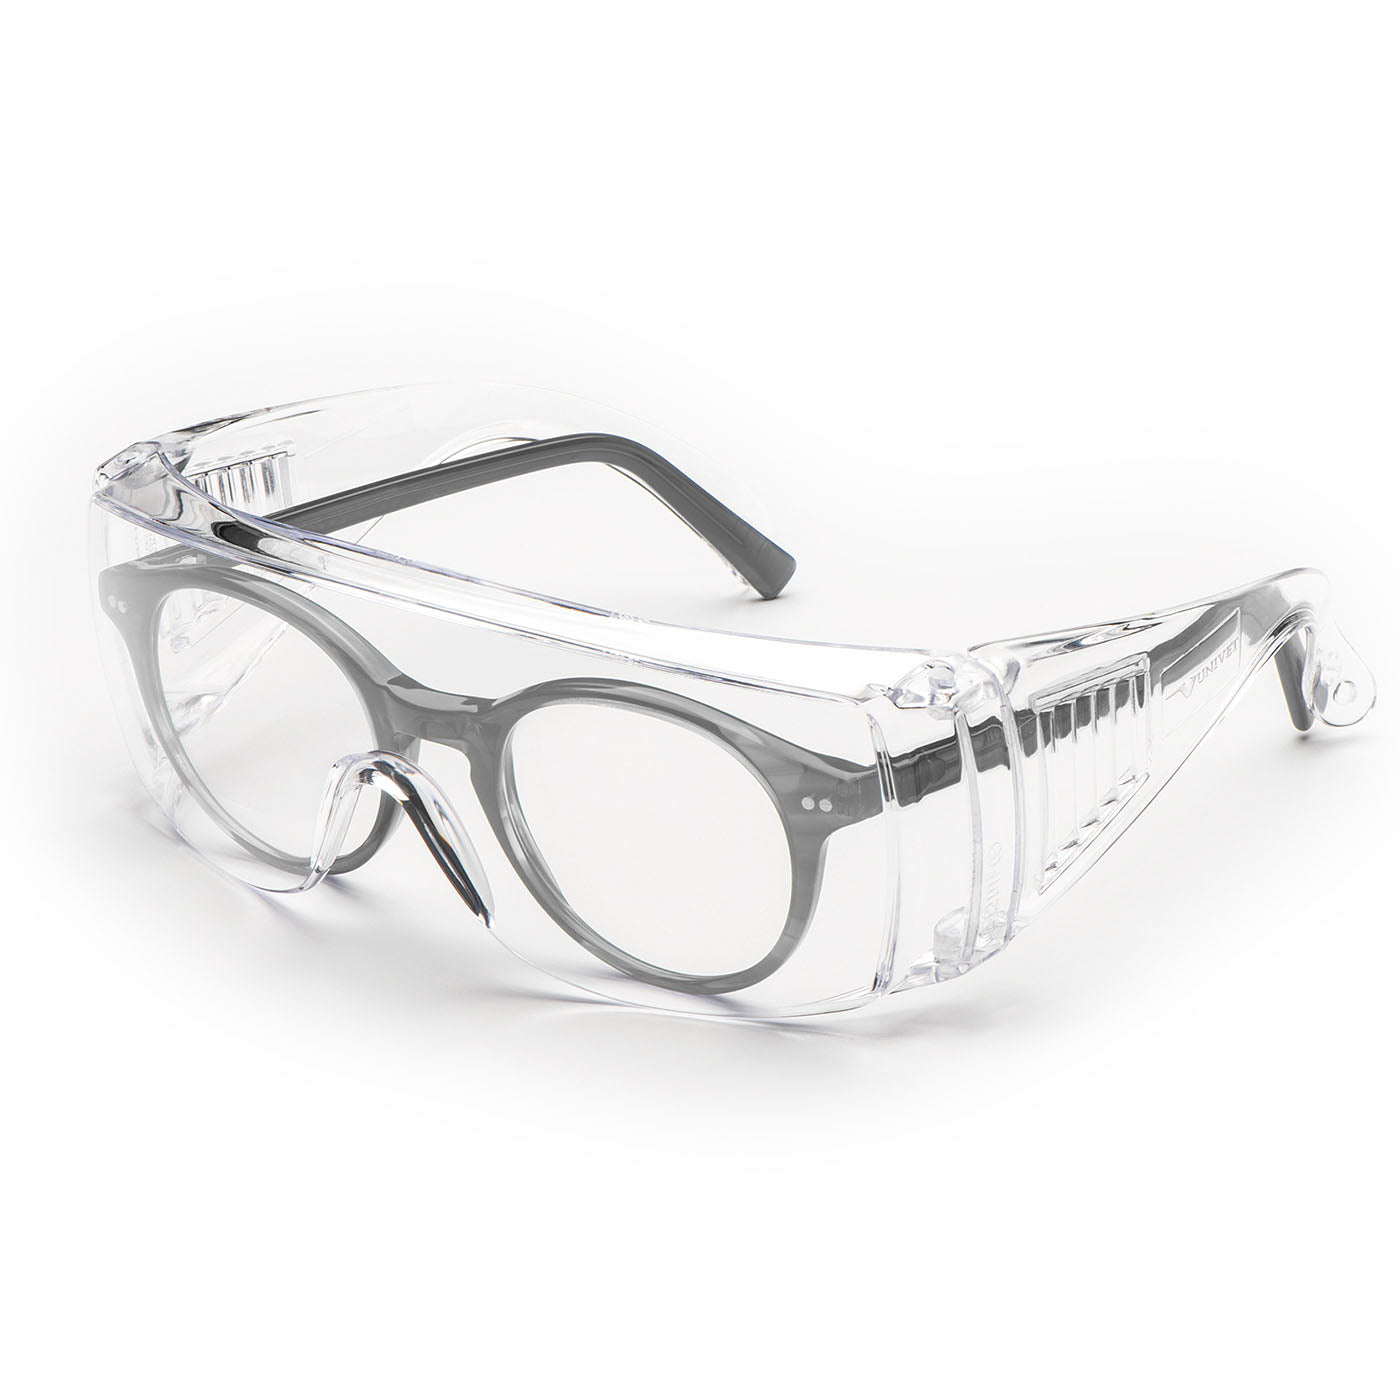 Univet 520 Clear Overspec Safety Glasses - 520110000